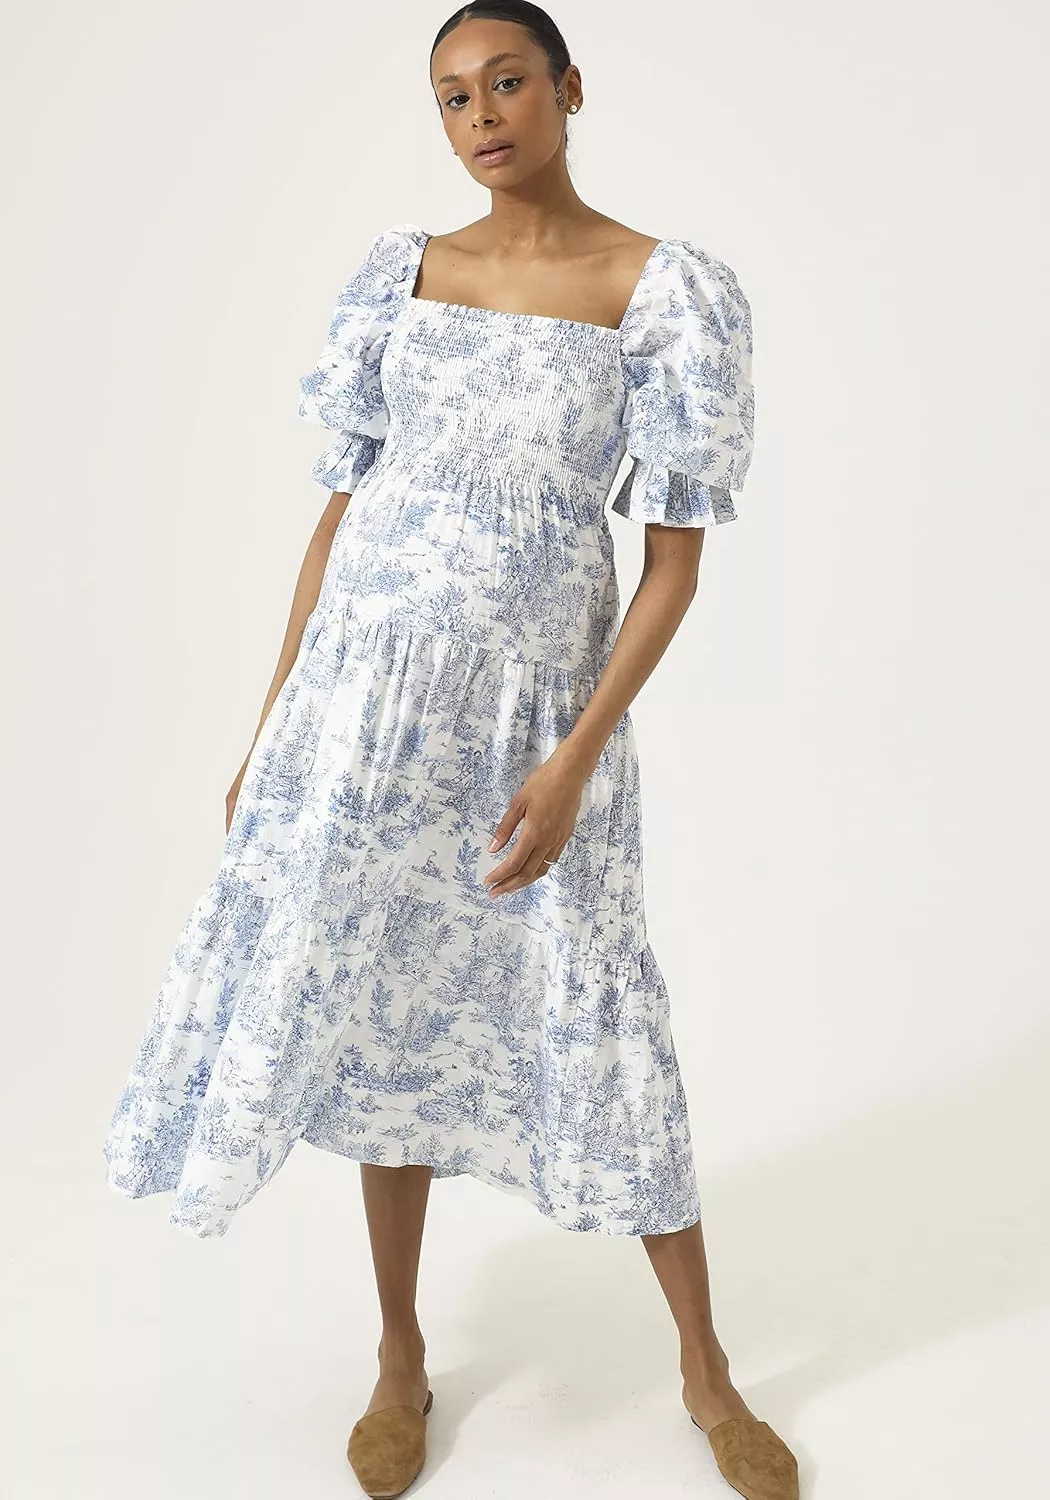 NOTHING FITS BUT Women's Classic Linen Cotton Nursing Dress